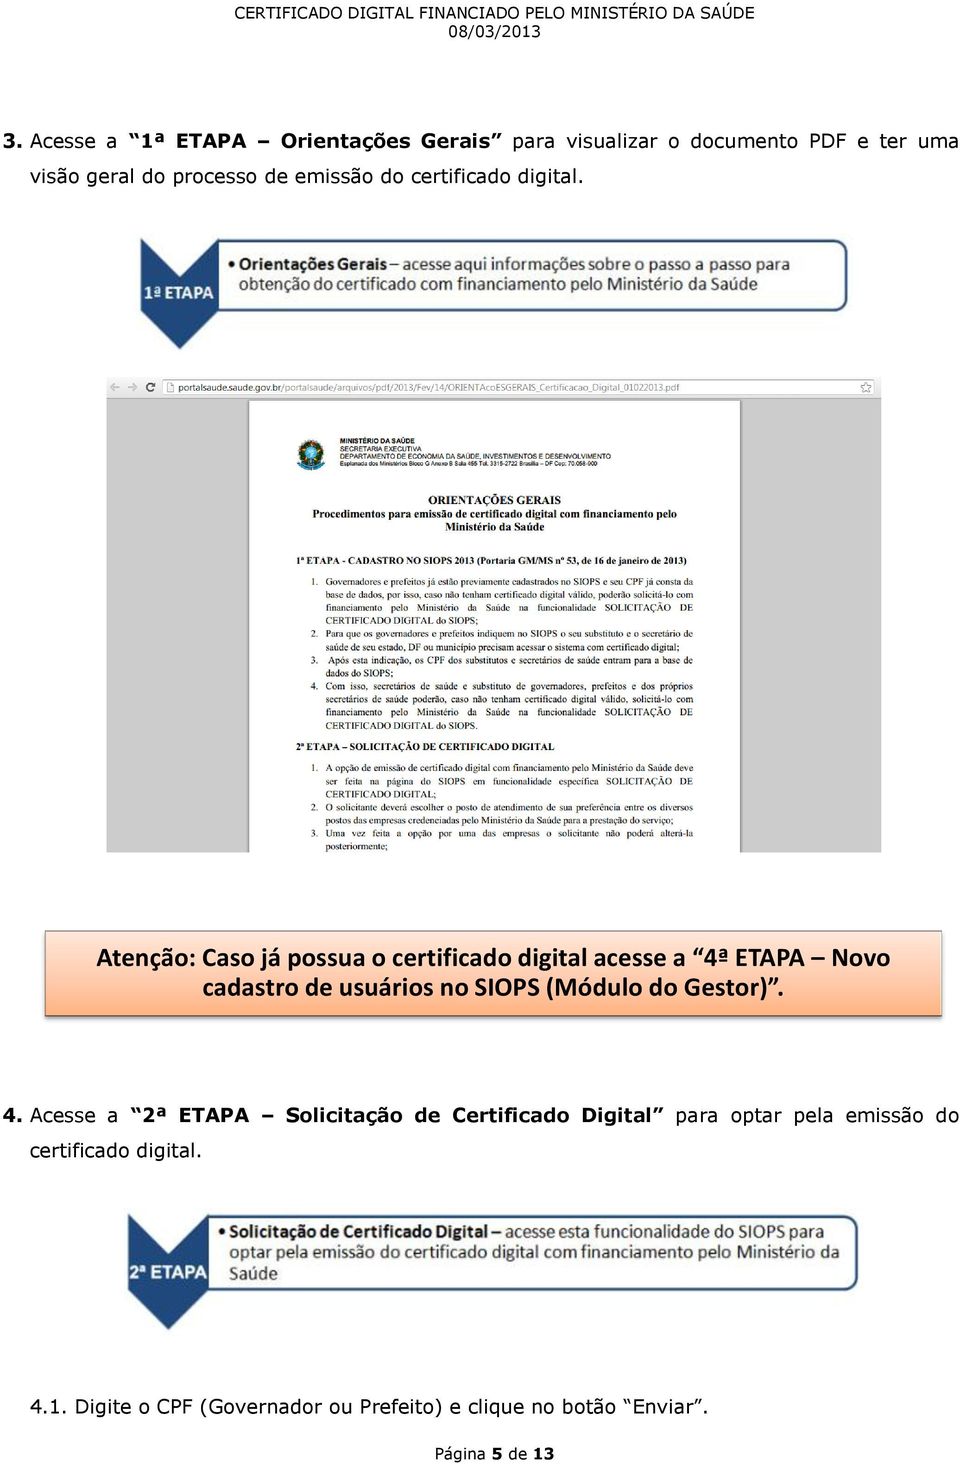 Atenção: Caso já possua o certificado digital acesse a 4ª ETAPA Novo cadastro de usuários no SIOPS (Módulo do